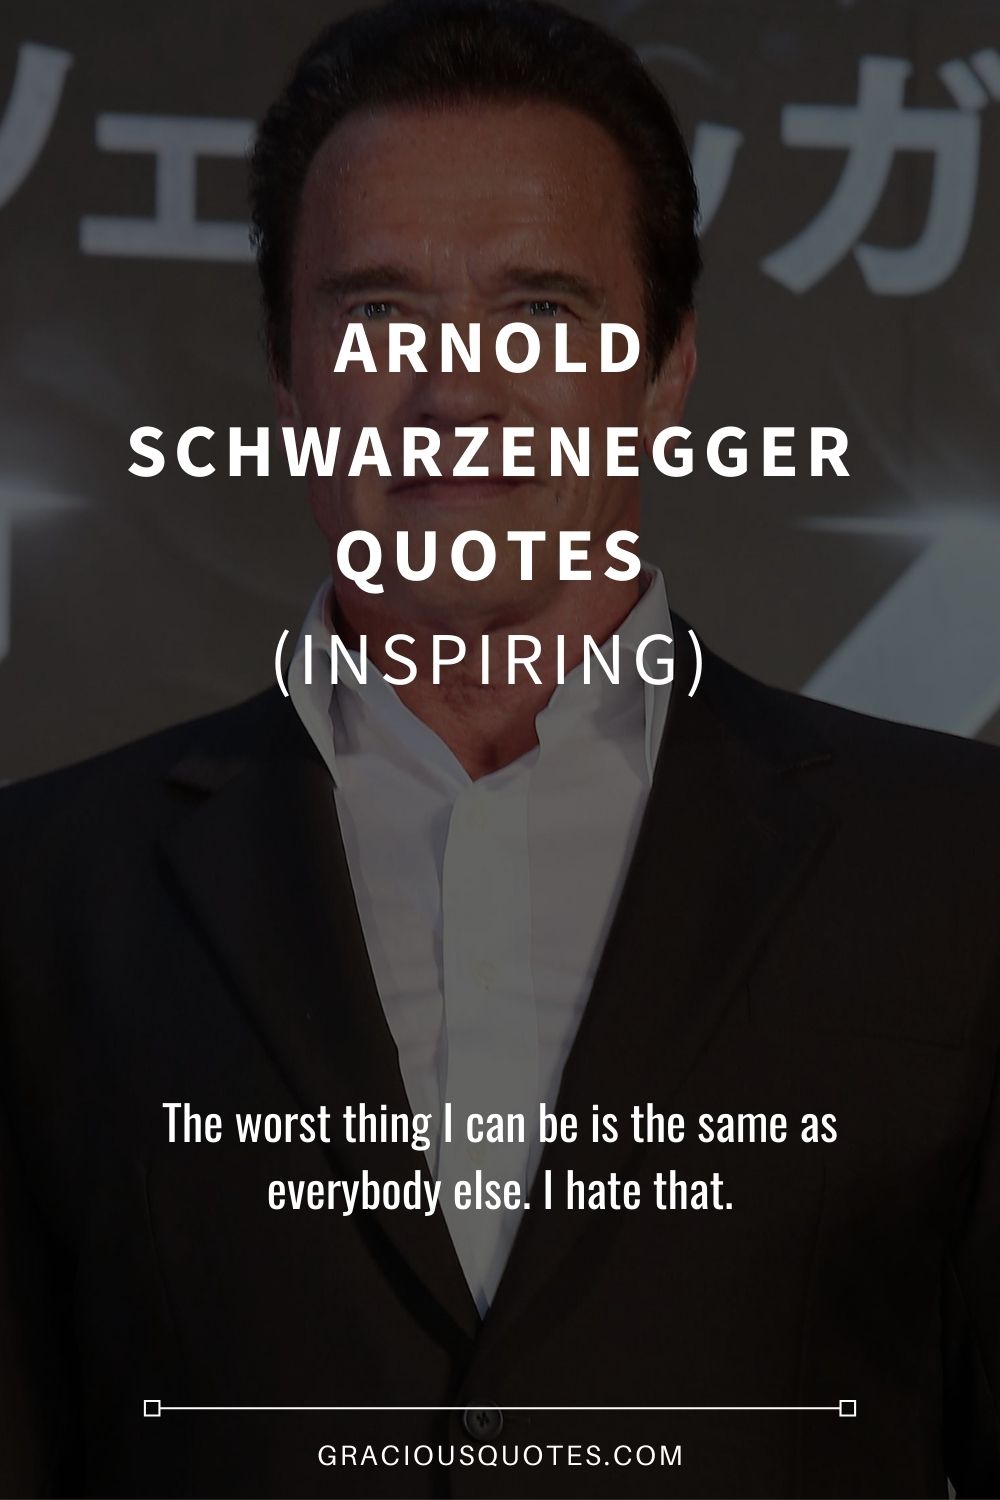 Arnold Schwarzenegger Quotes (INSPIRING) - Gracious Quotes